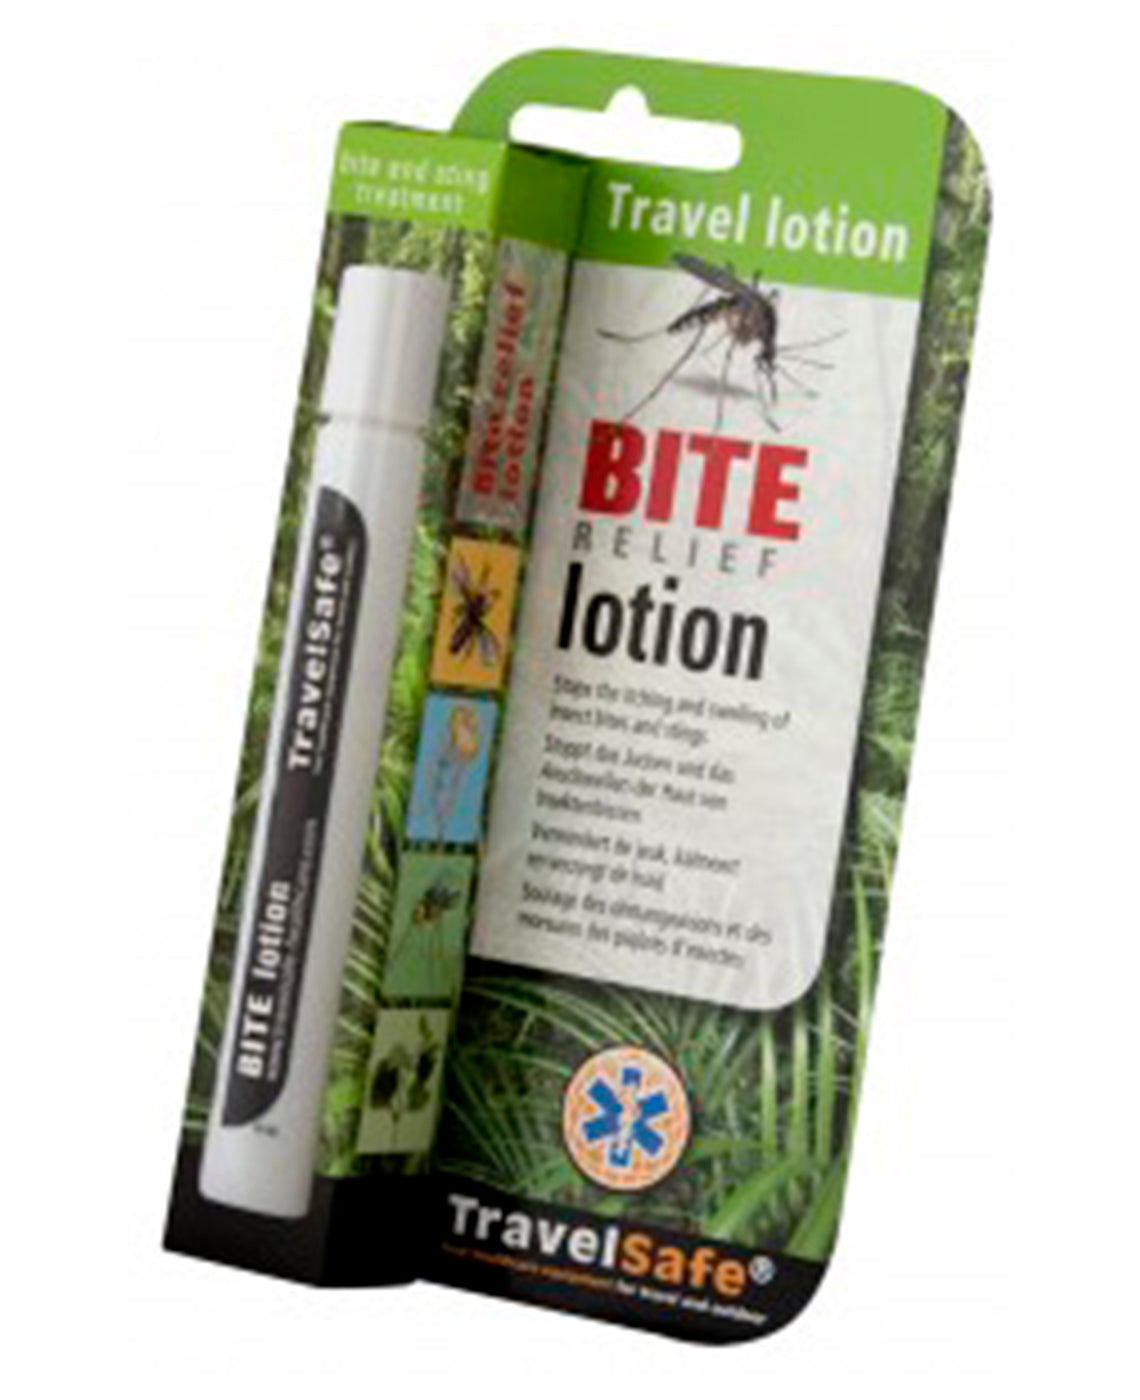 Billede af TravelSafe Bite relief lotion